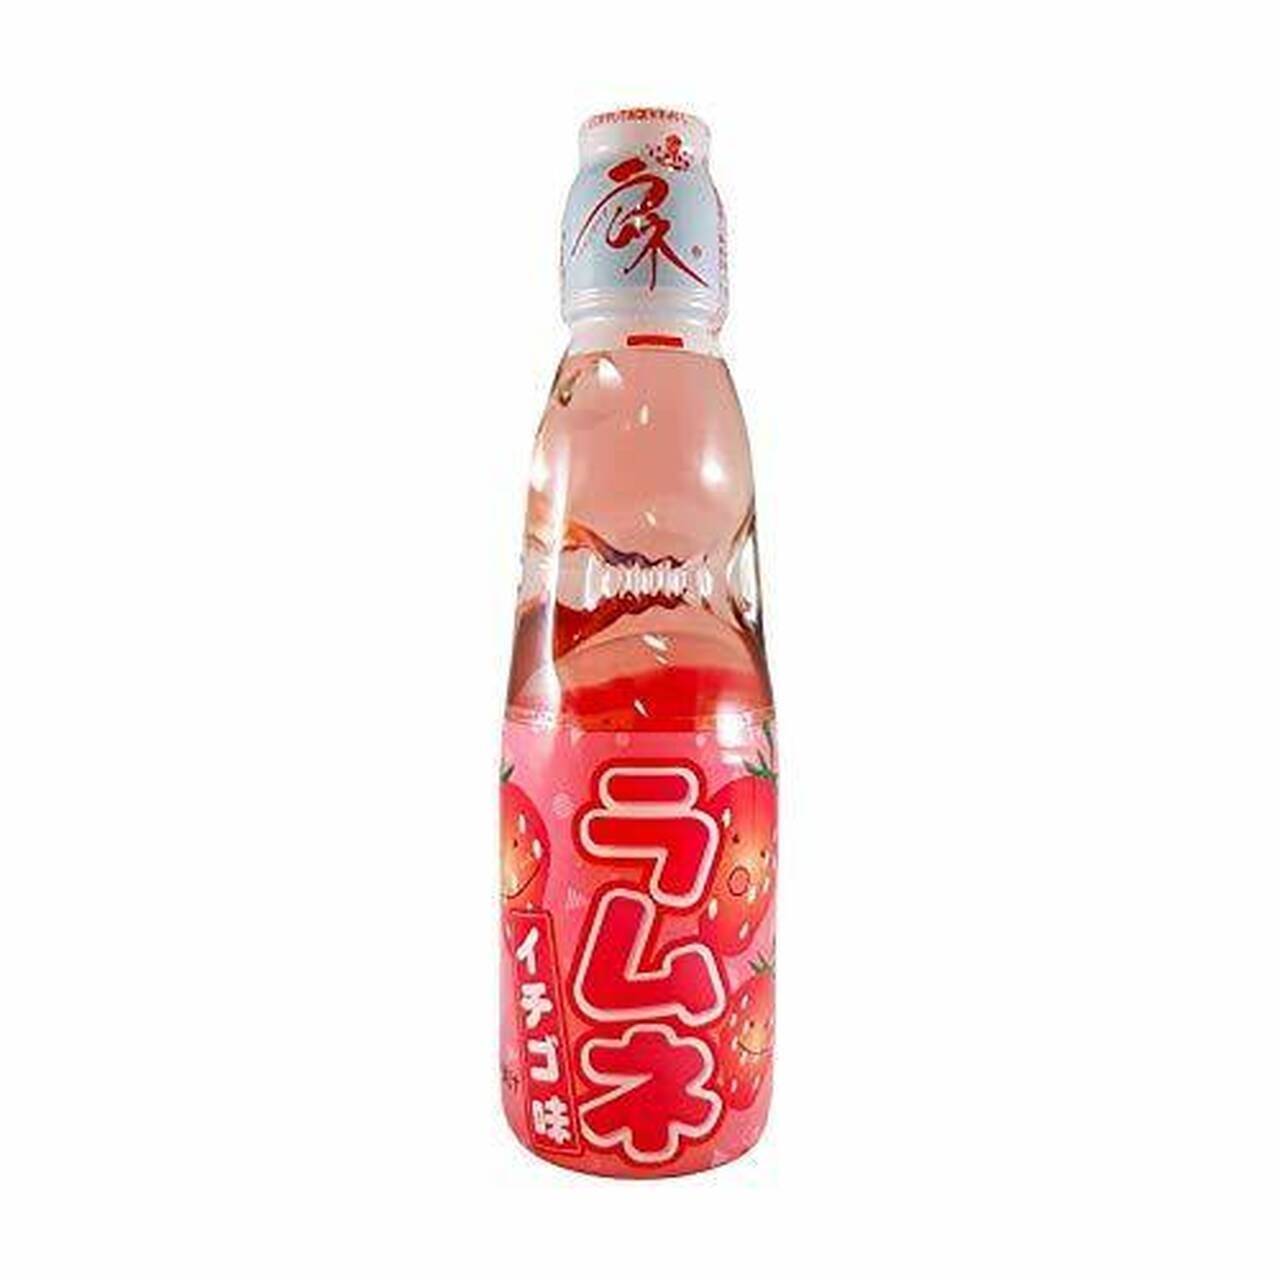 Hata Kosen Ramune Pop Drink Strawberry Flavour 200ml